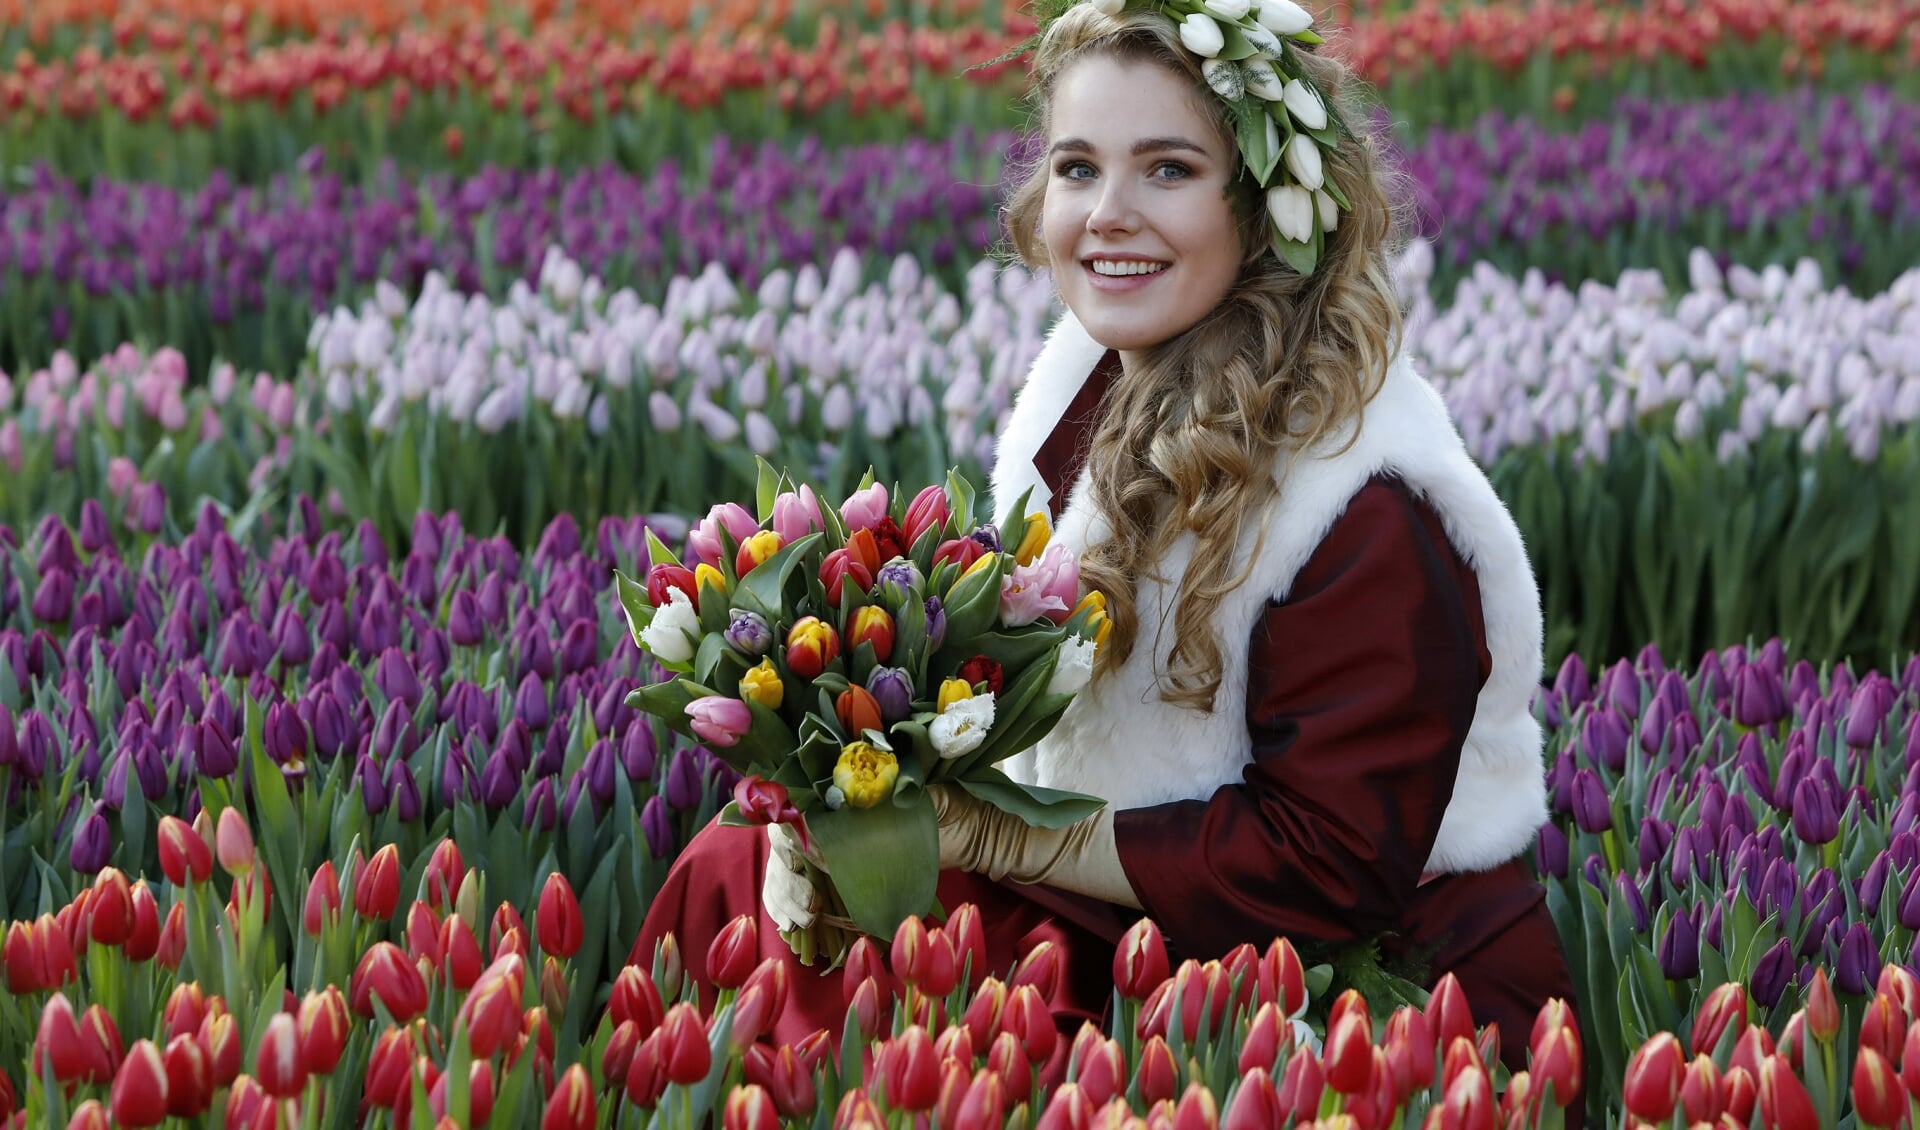 Zaterdag is Nationale Tulpendag. Deze dag markeert de start van het tulpenseizoen en heeft dit jaar als thema 'Share Happines'    